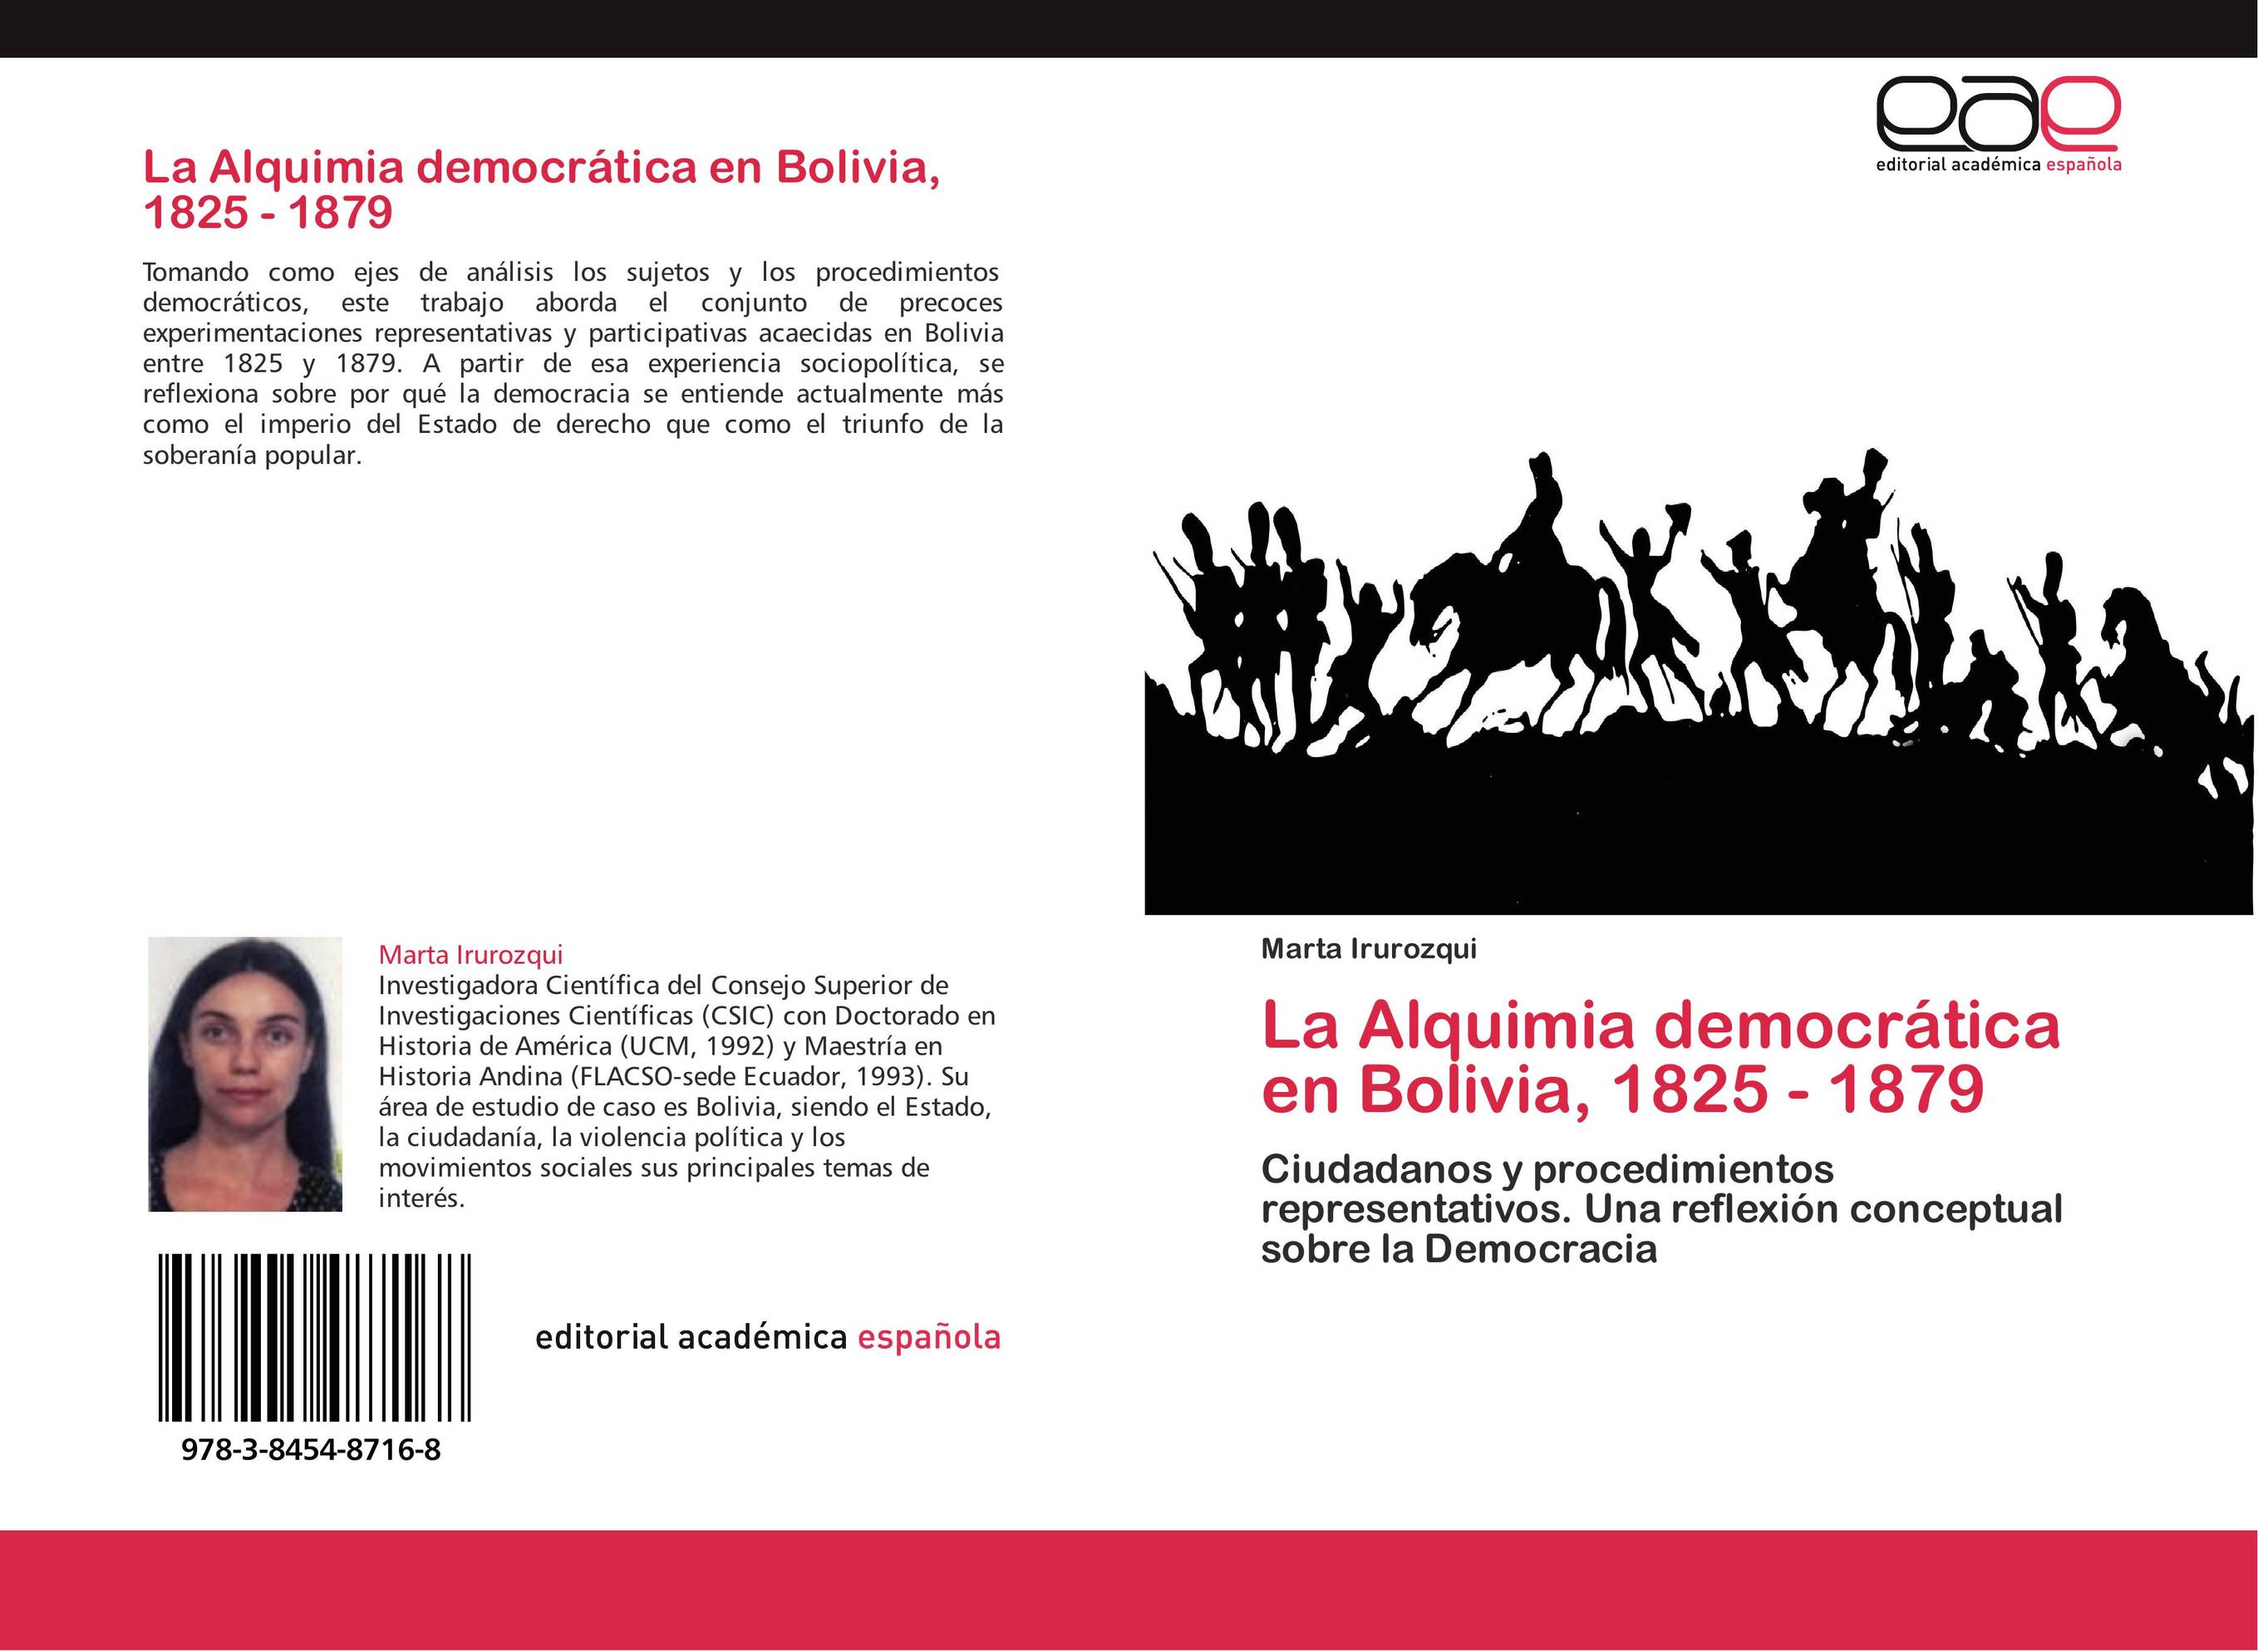 La Alquimia democrática en Bolivia, 1825 - 1879